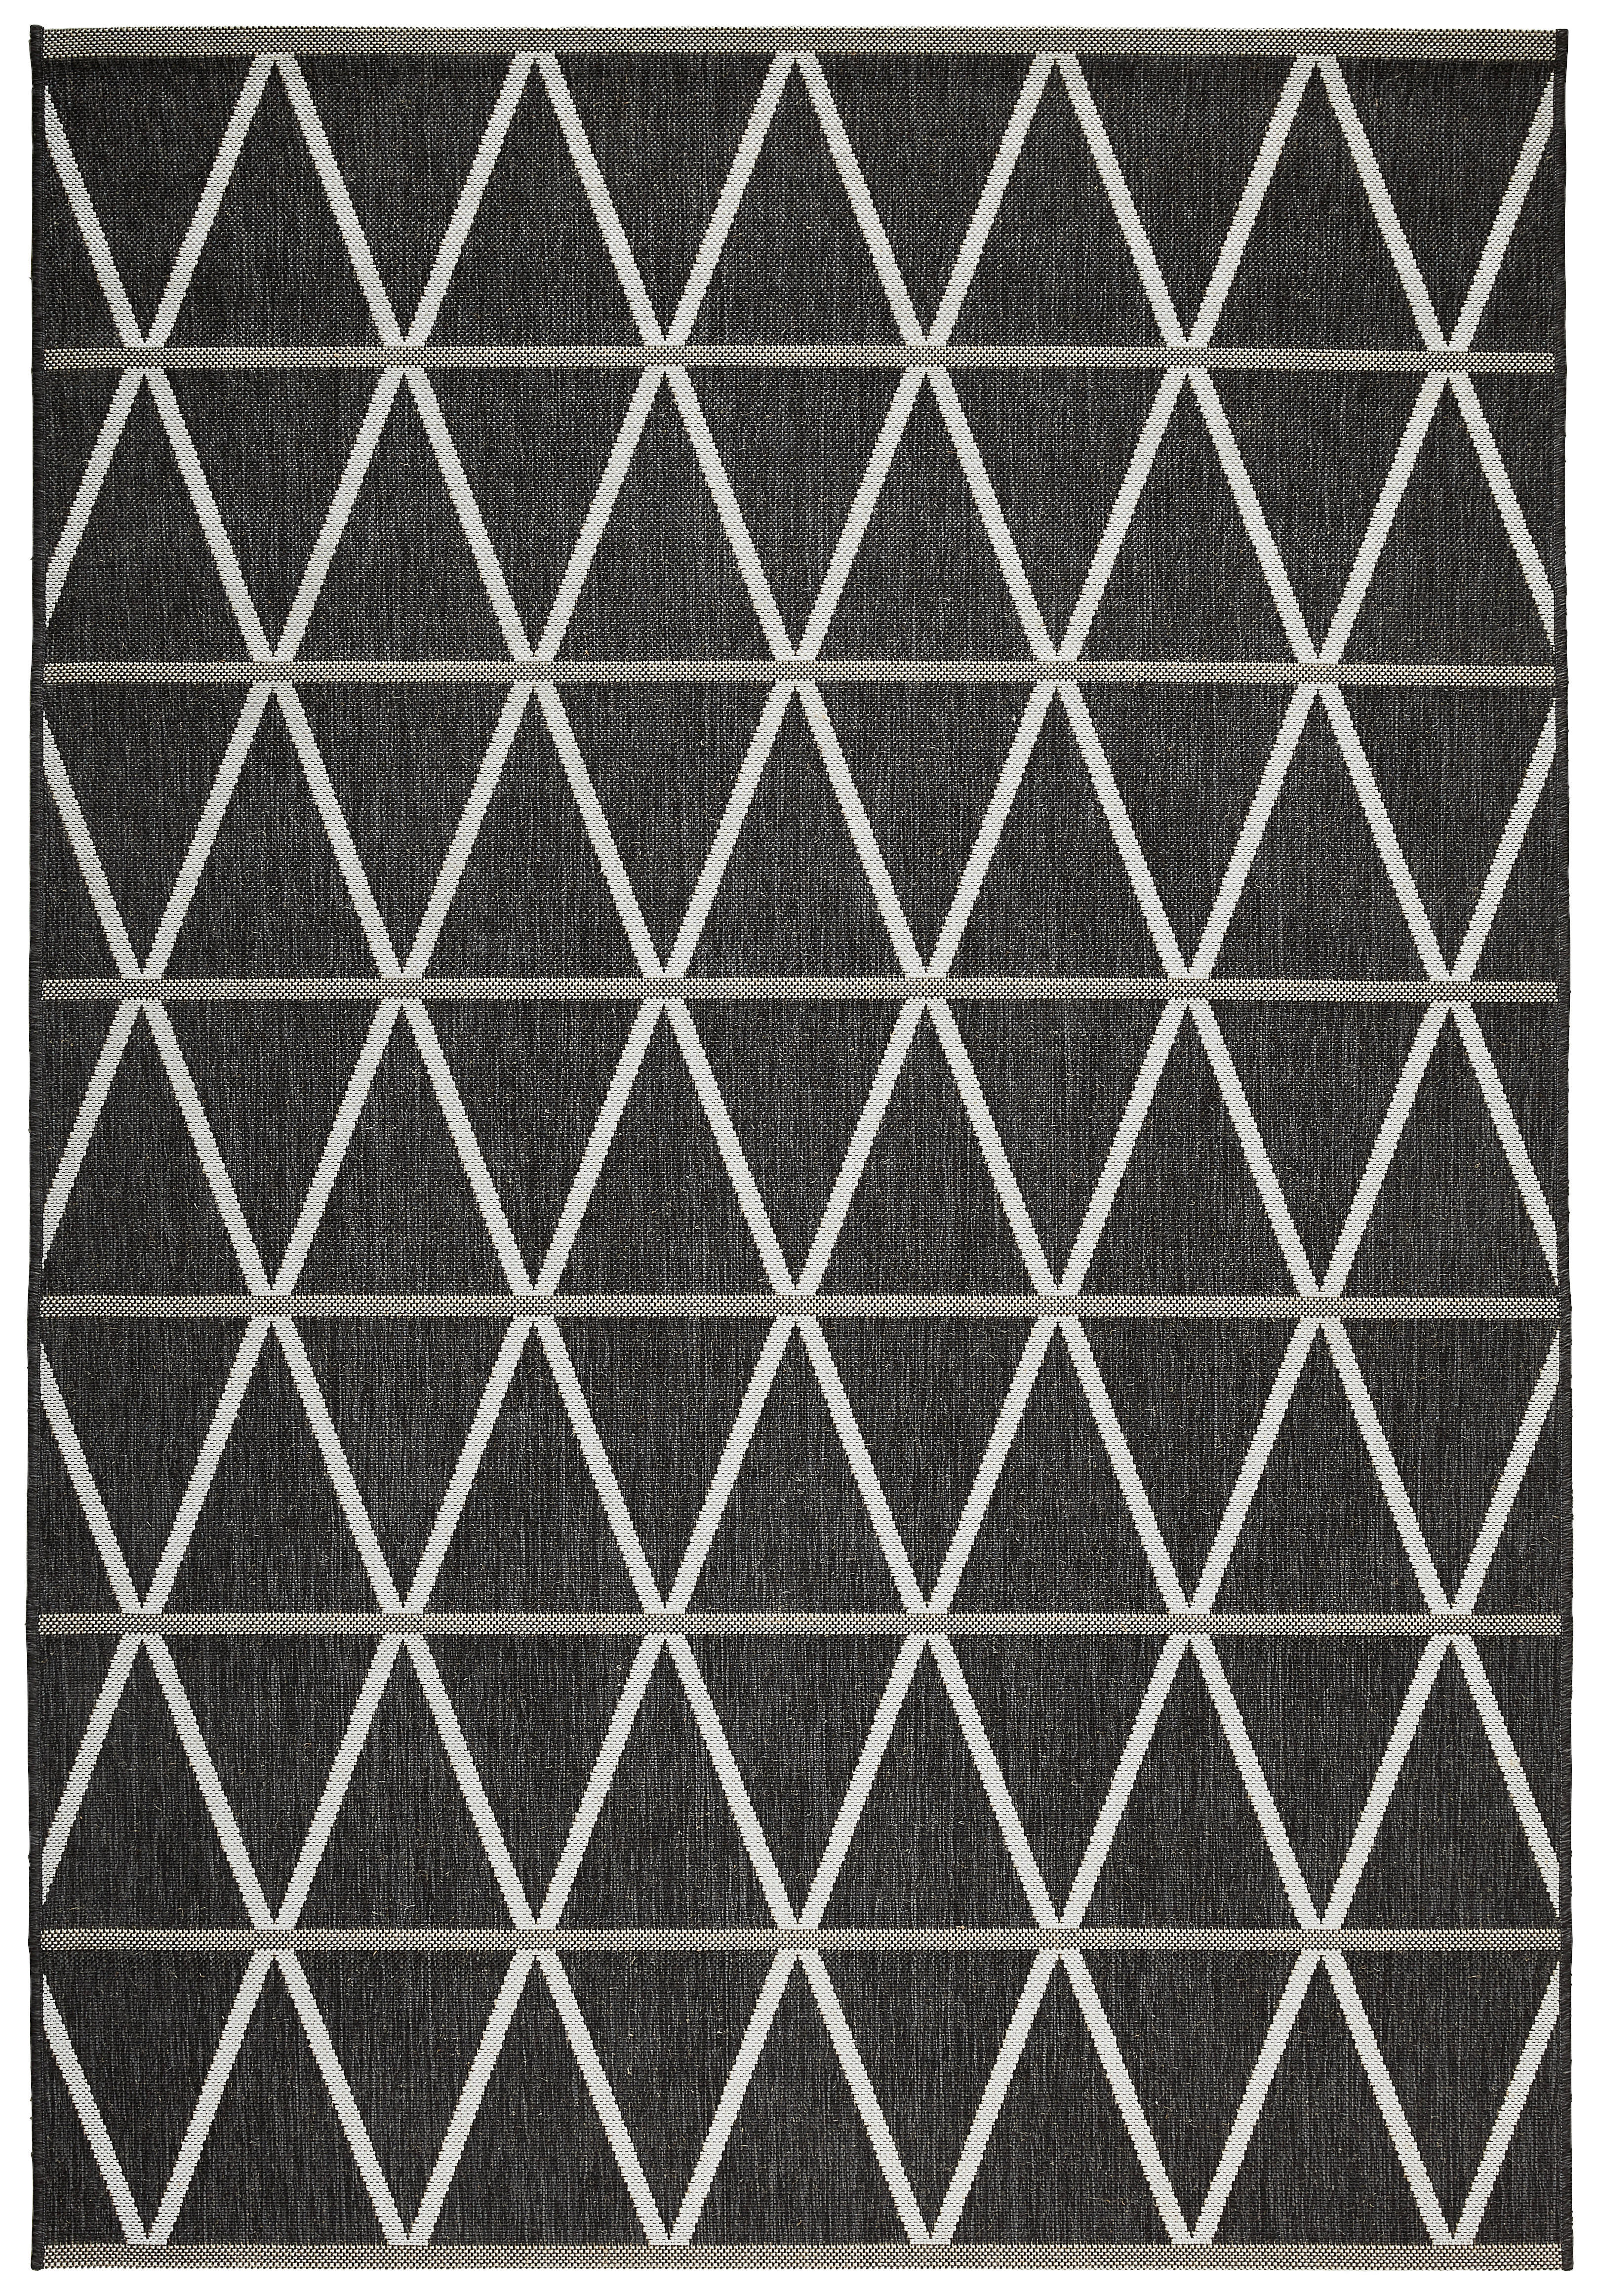 OUTDOORTEPPICH  80/150 cm  Schwarz   - Schwarz, Design, Textil (80/150cm) - Novel